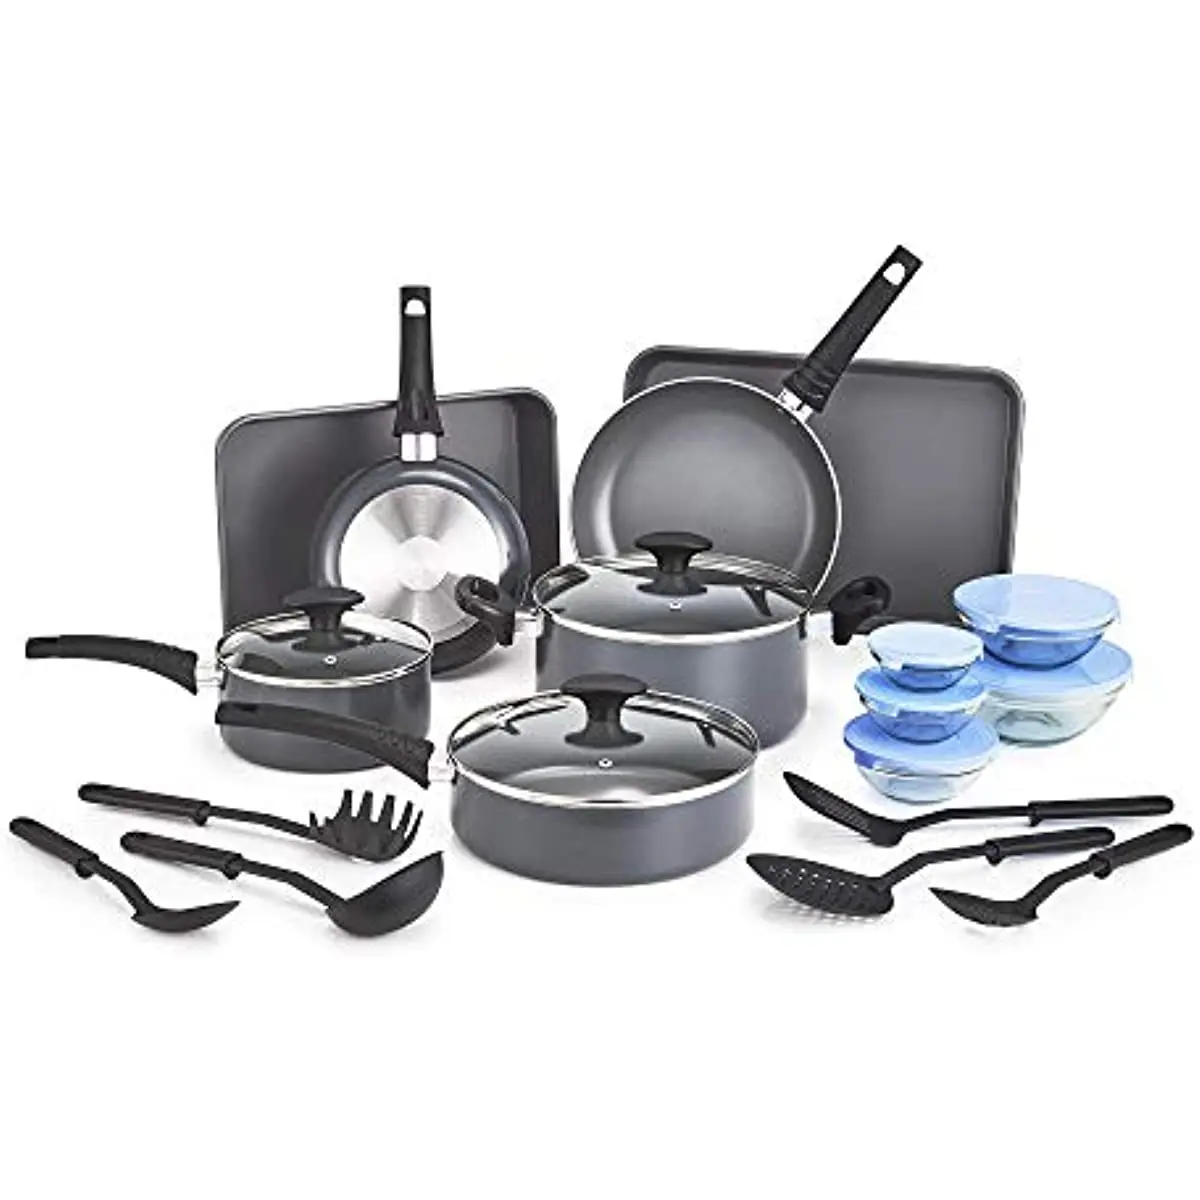 

Nonstick Cookware Set Glass Lids - Aluminum Bakeware Pots Pans Storage Bowls & Utensils Compatible All Stovetops 21 Piece Black